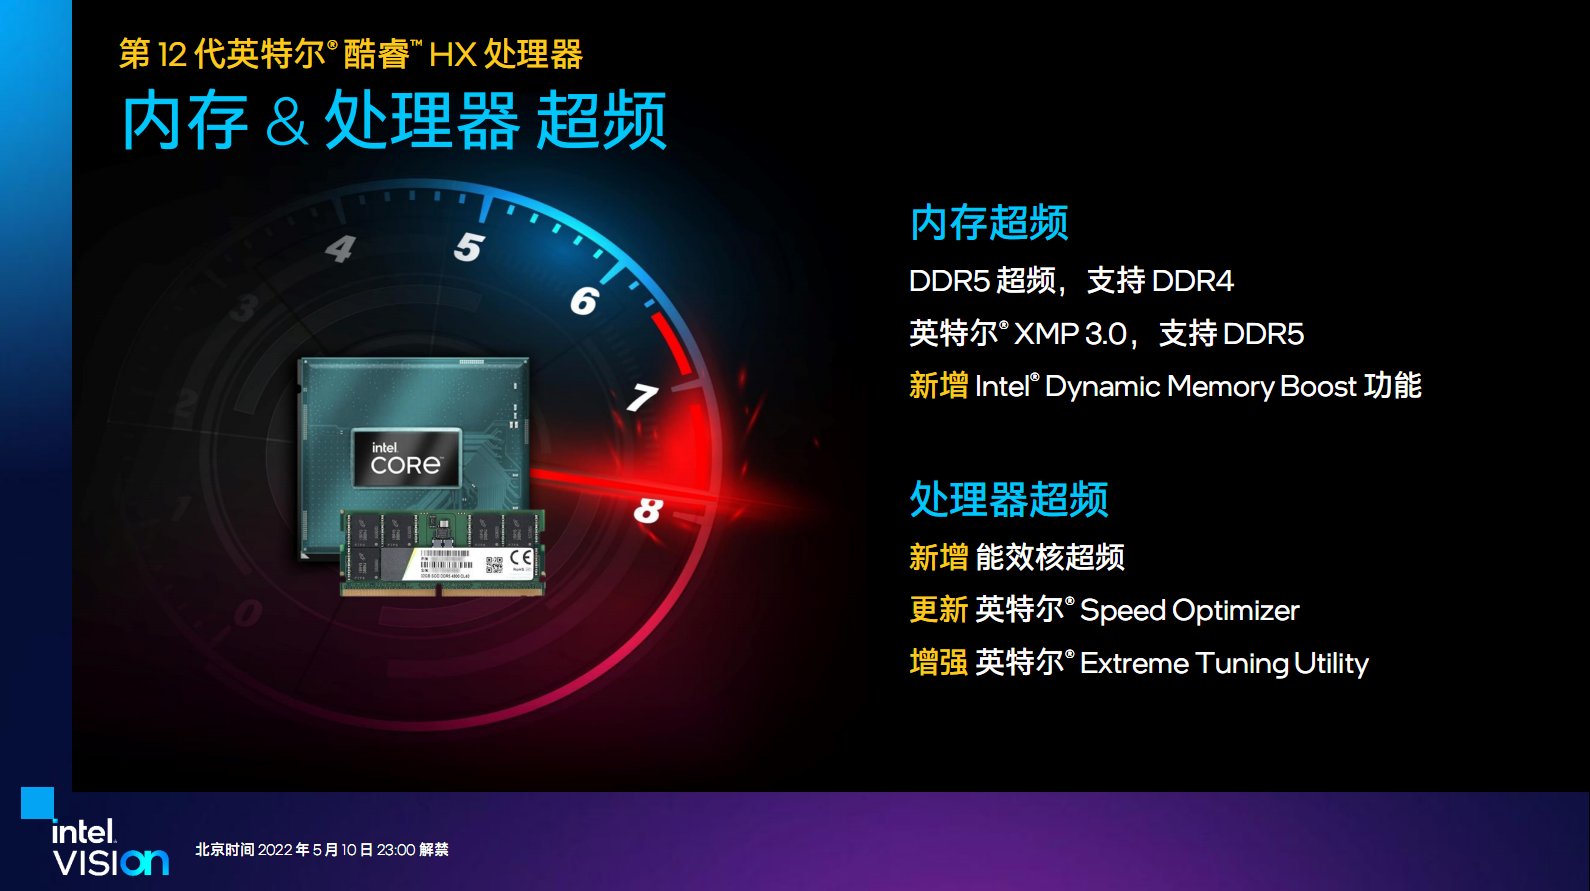 12th Gen Intel Core HX Processors 8